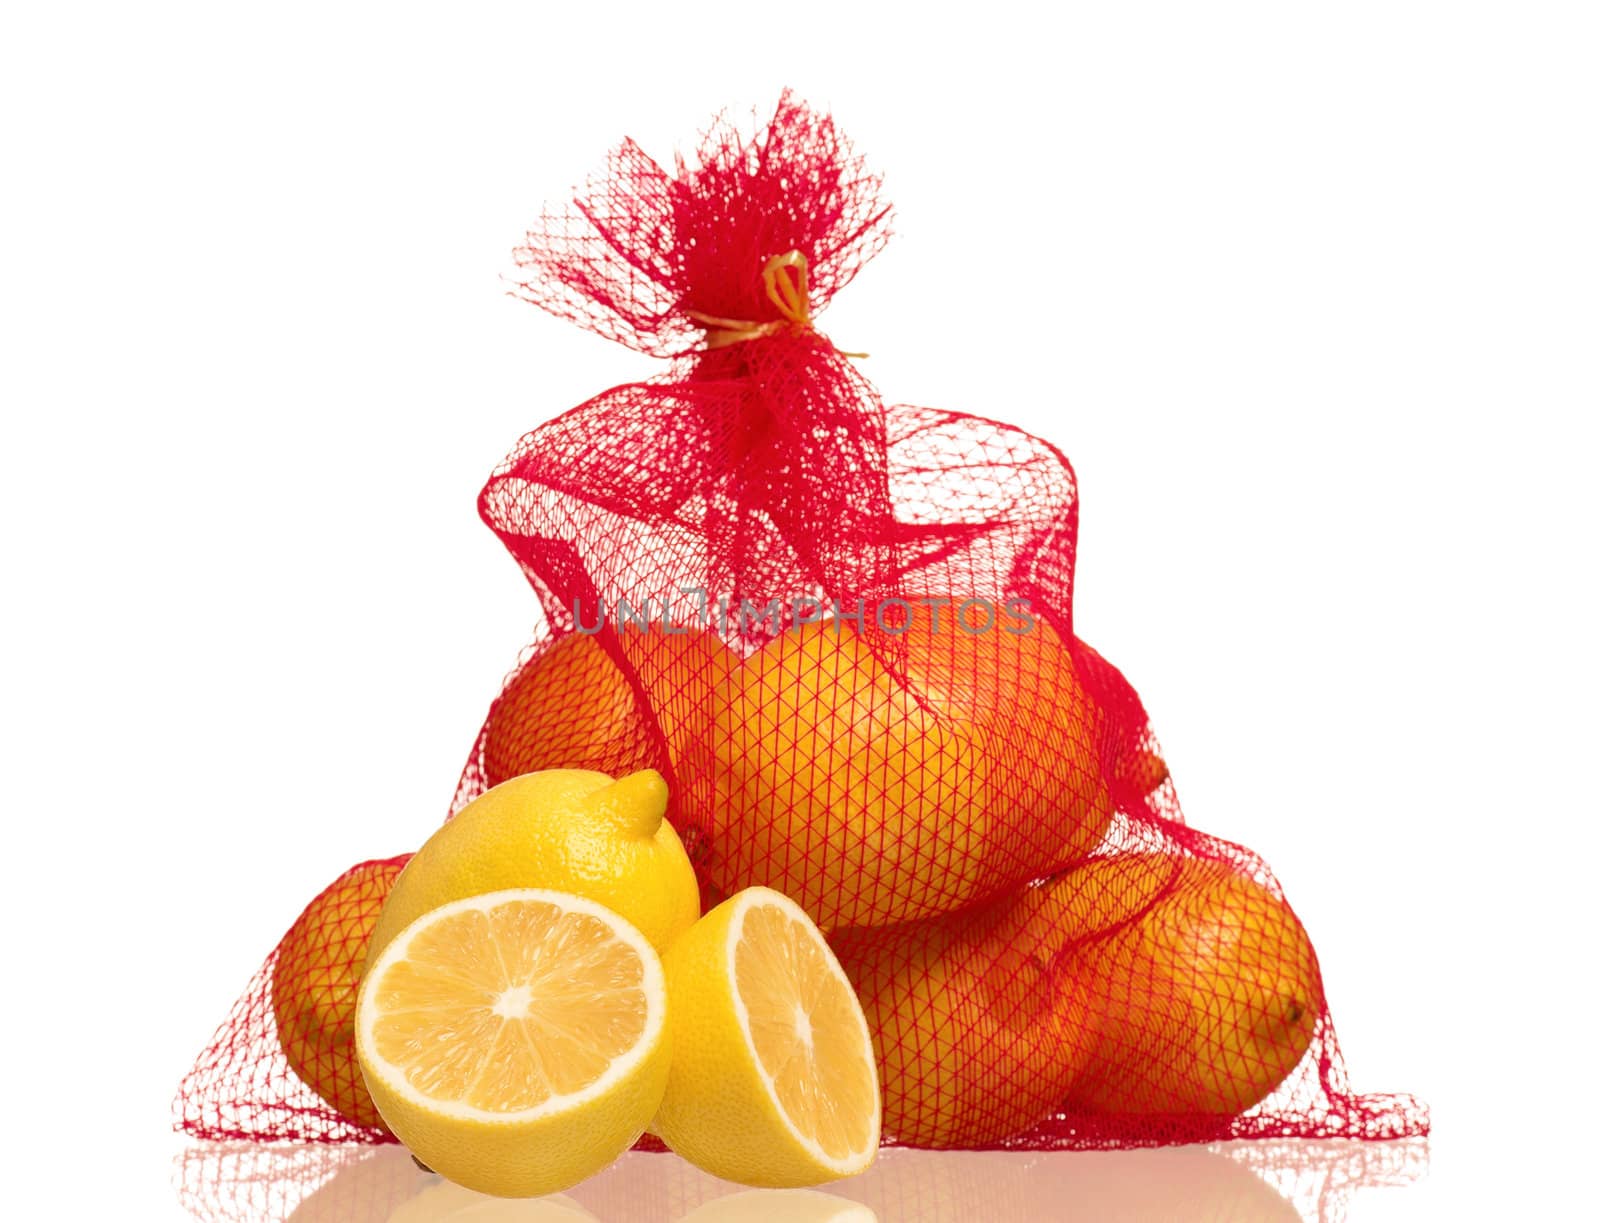 Lemons in net bag by fotostok_pdv